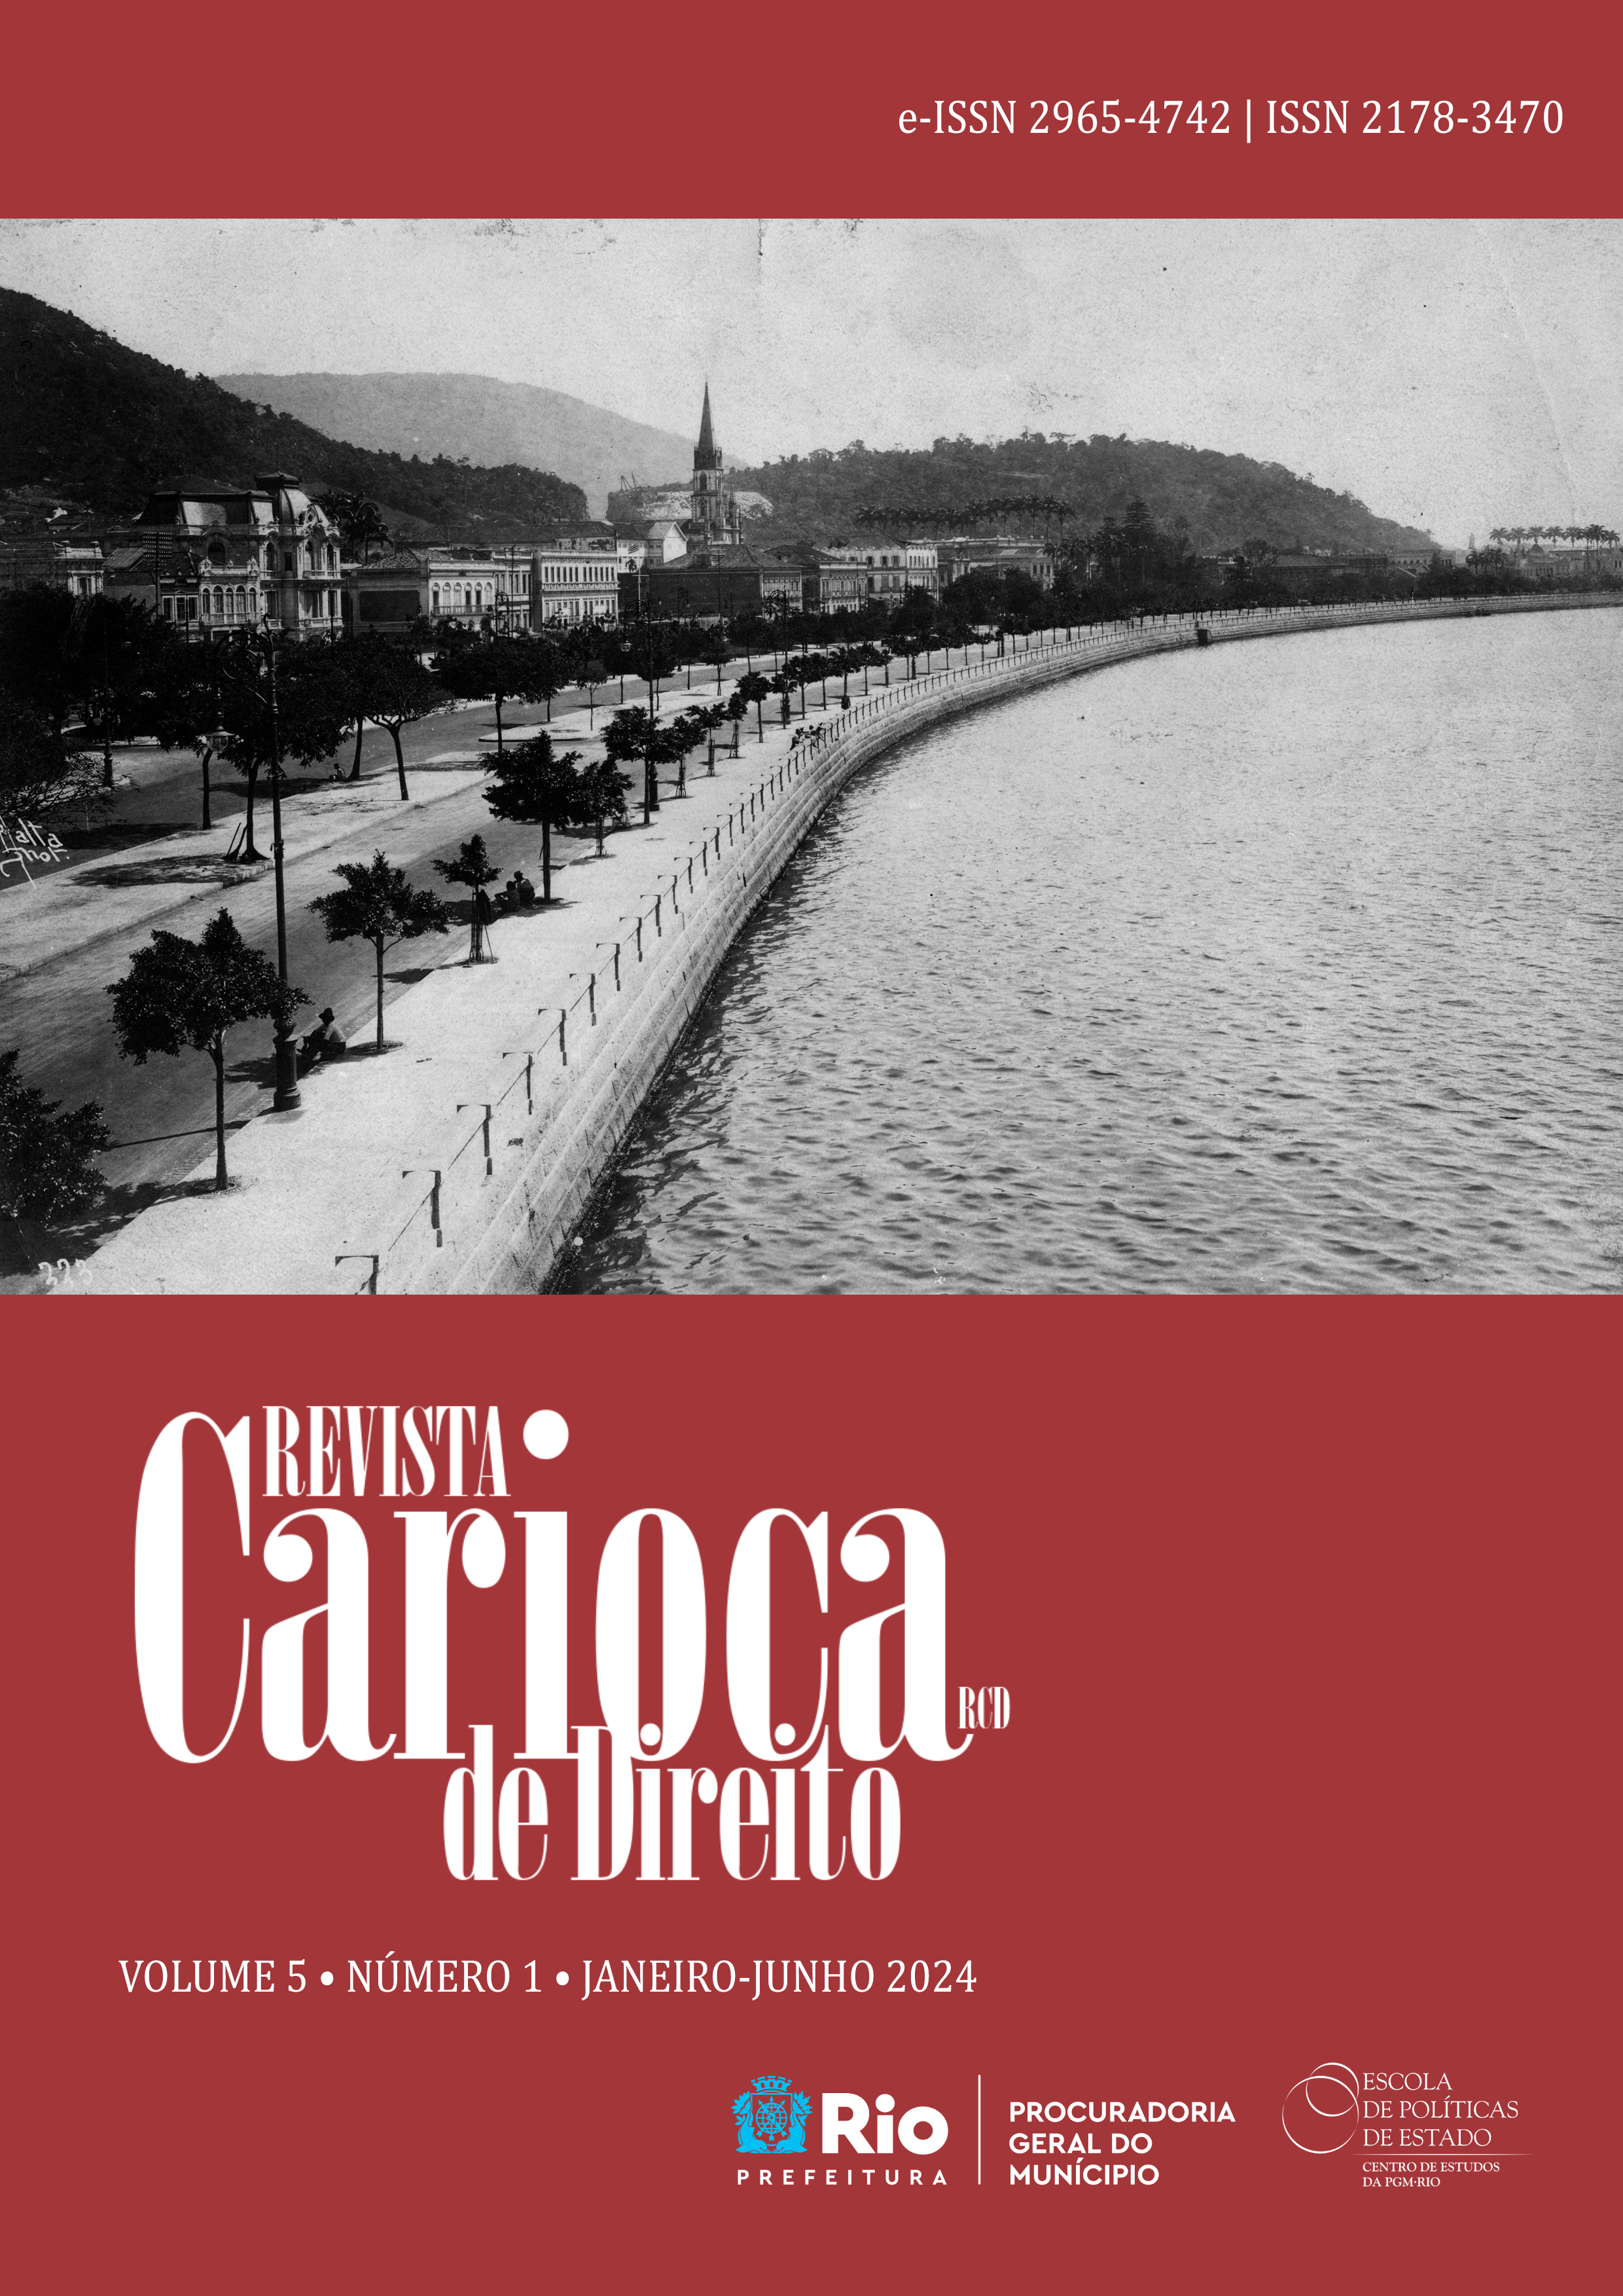 					Visualizar v. 5 n. 1 (2024): Revista Carioca de Direito
				